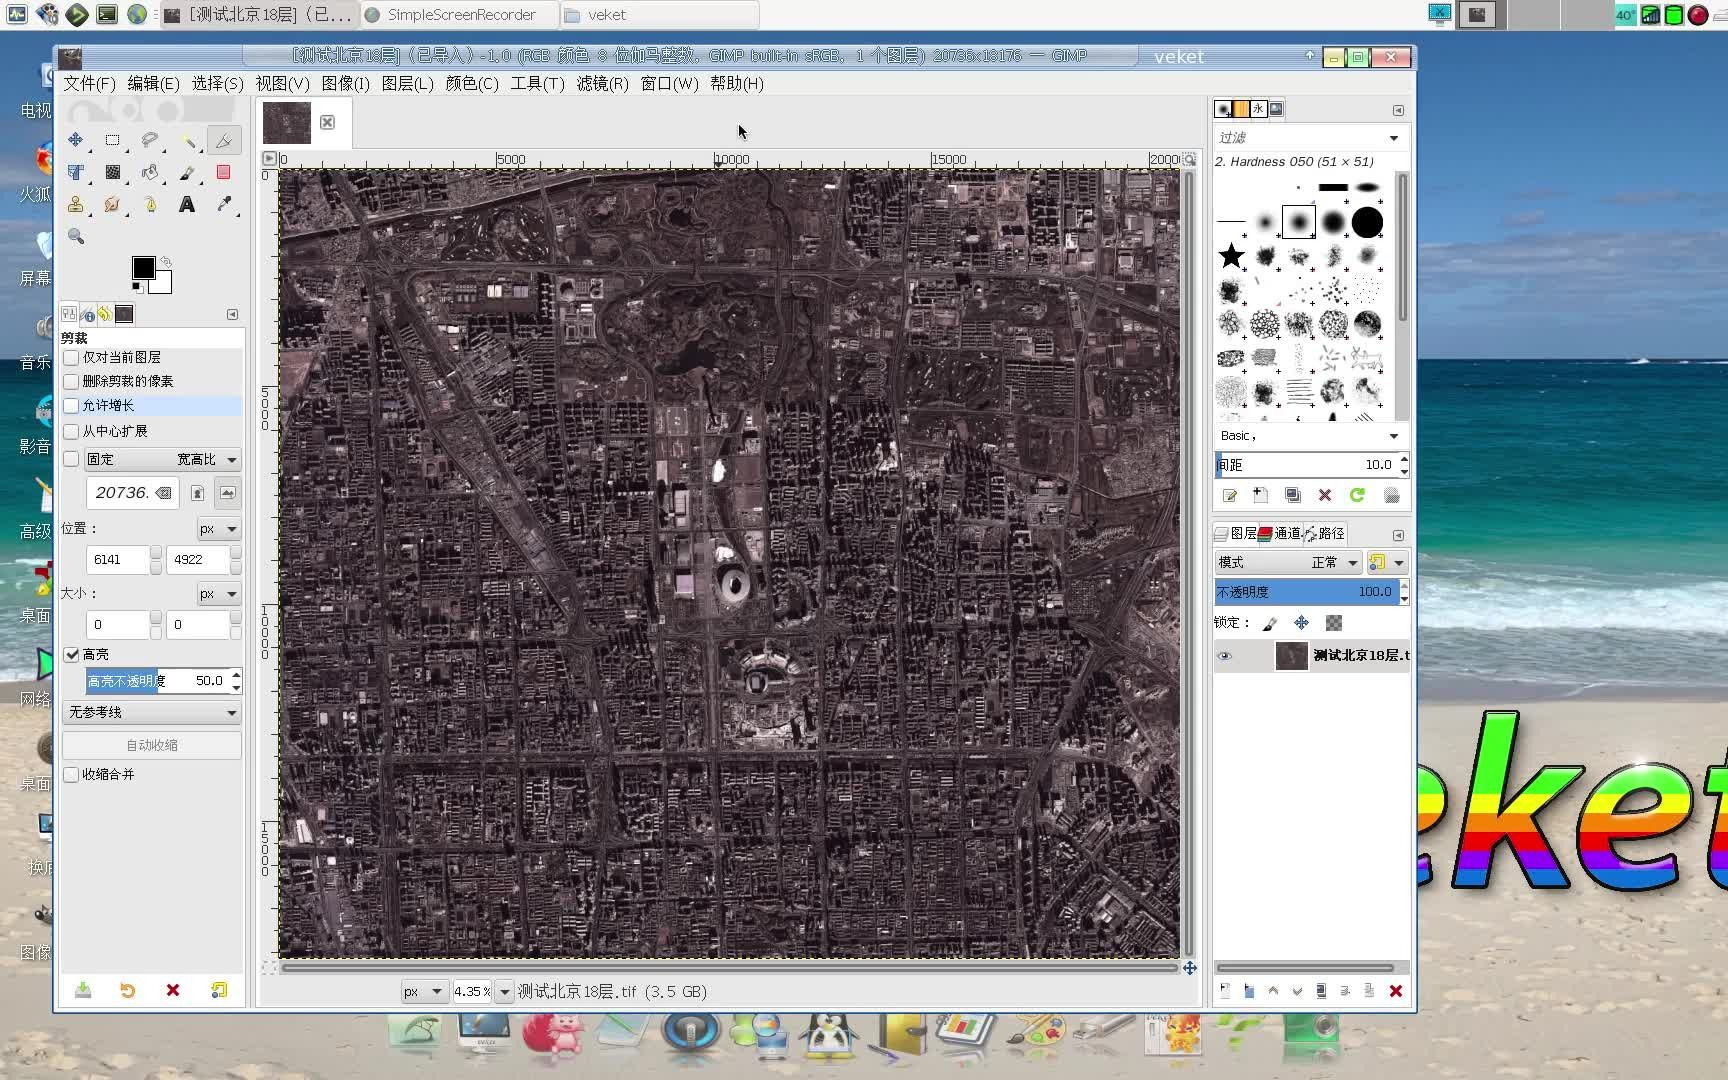 支持遥感影像数据常用的geotiff图像格式导出保留图片上携带的坐标